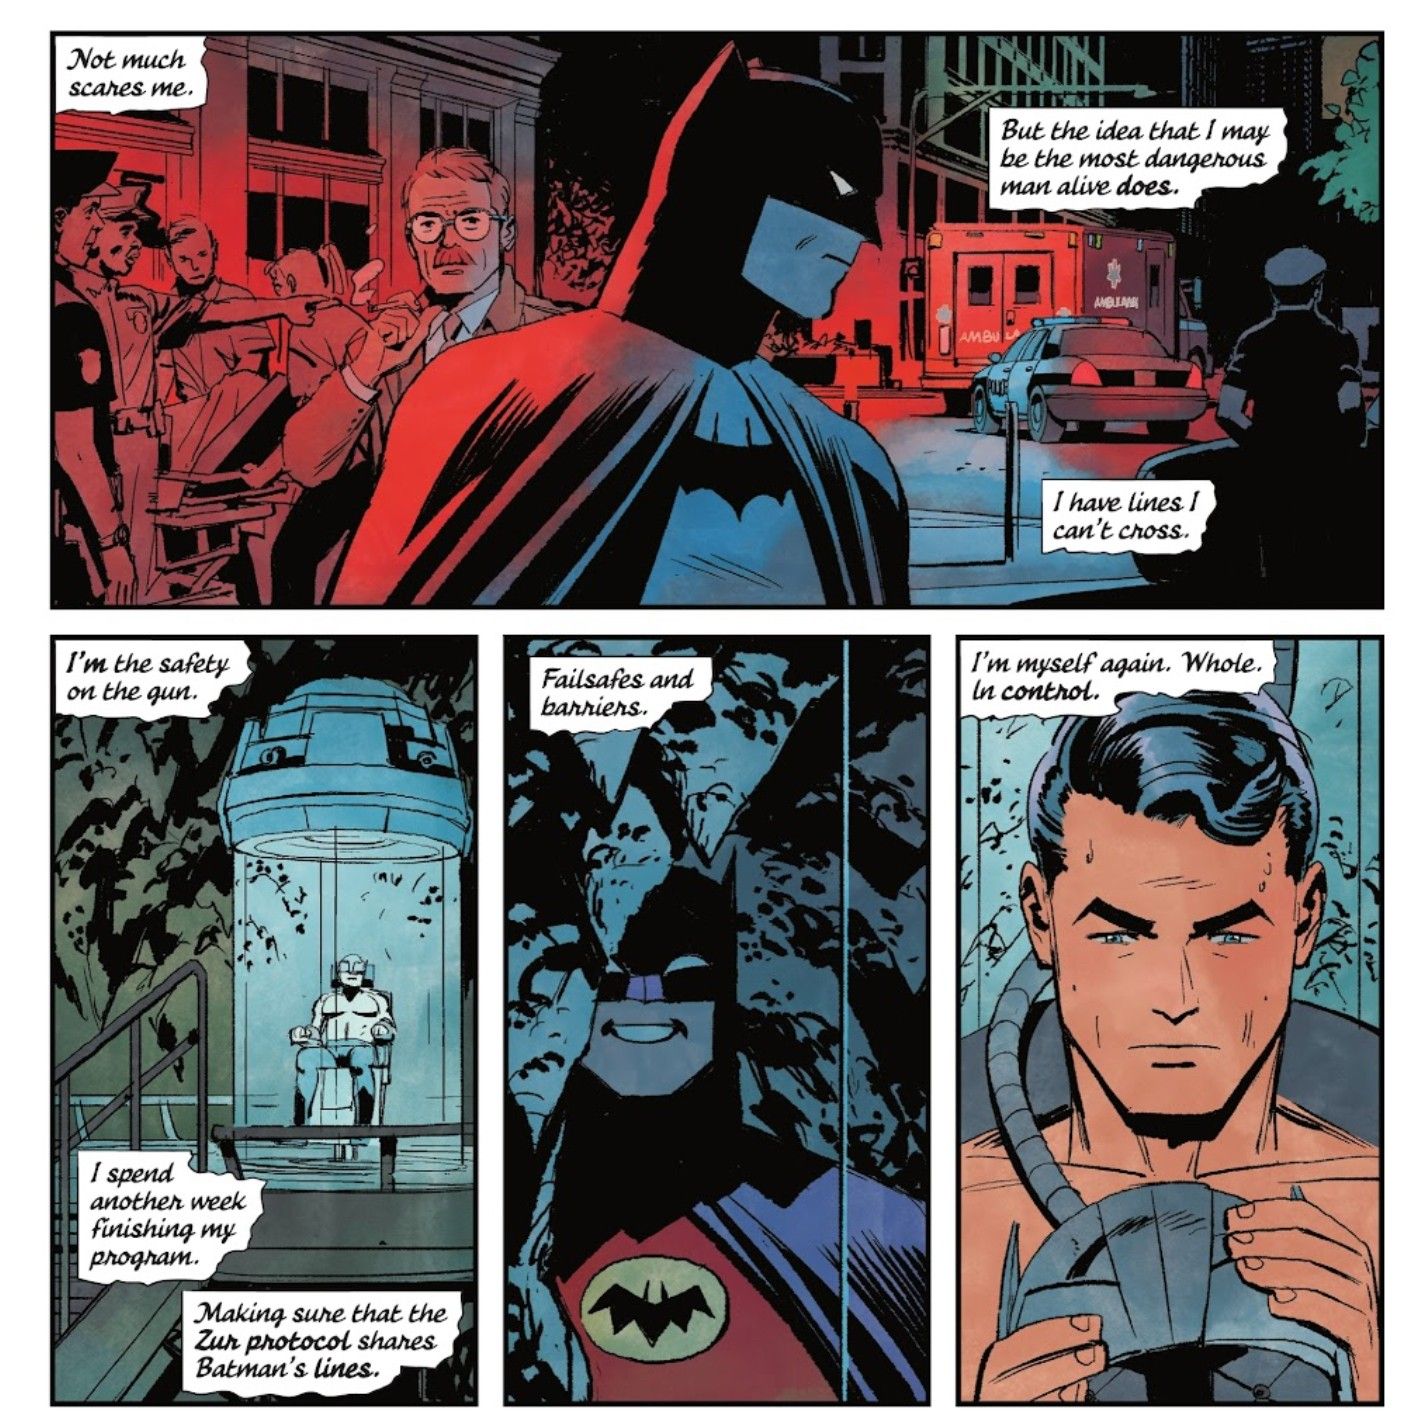 Batman Explains Why He Designs Failsafe Programs for Himself